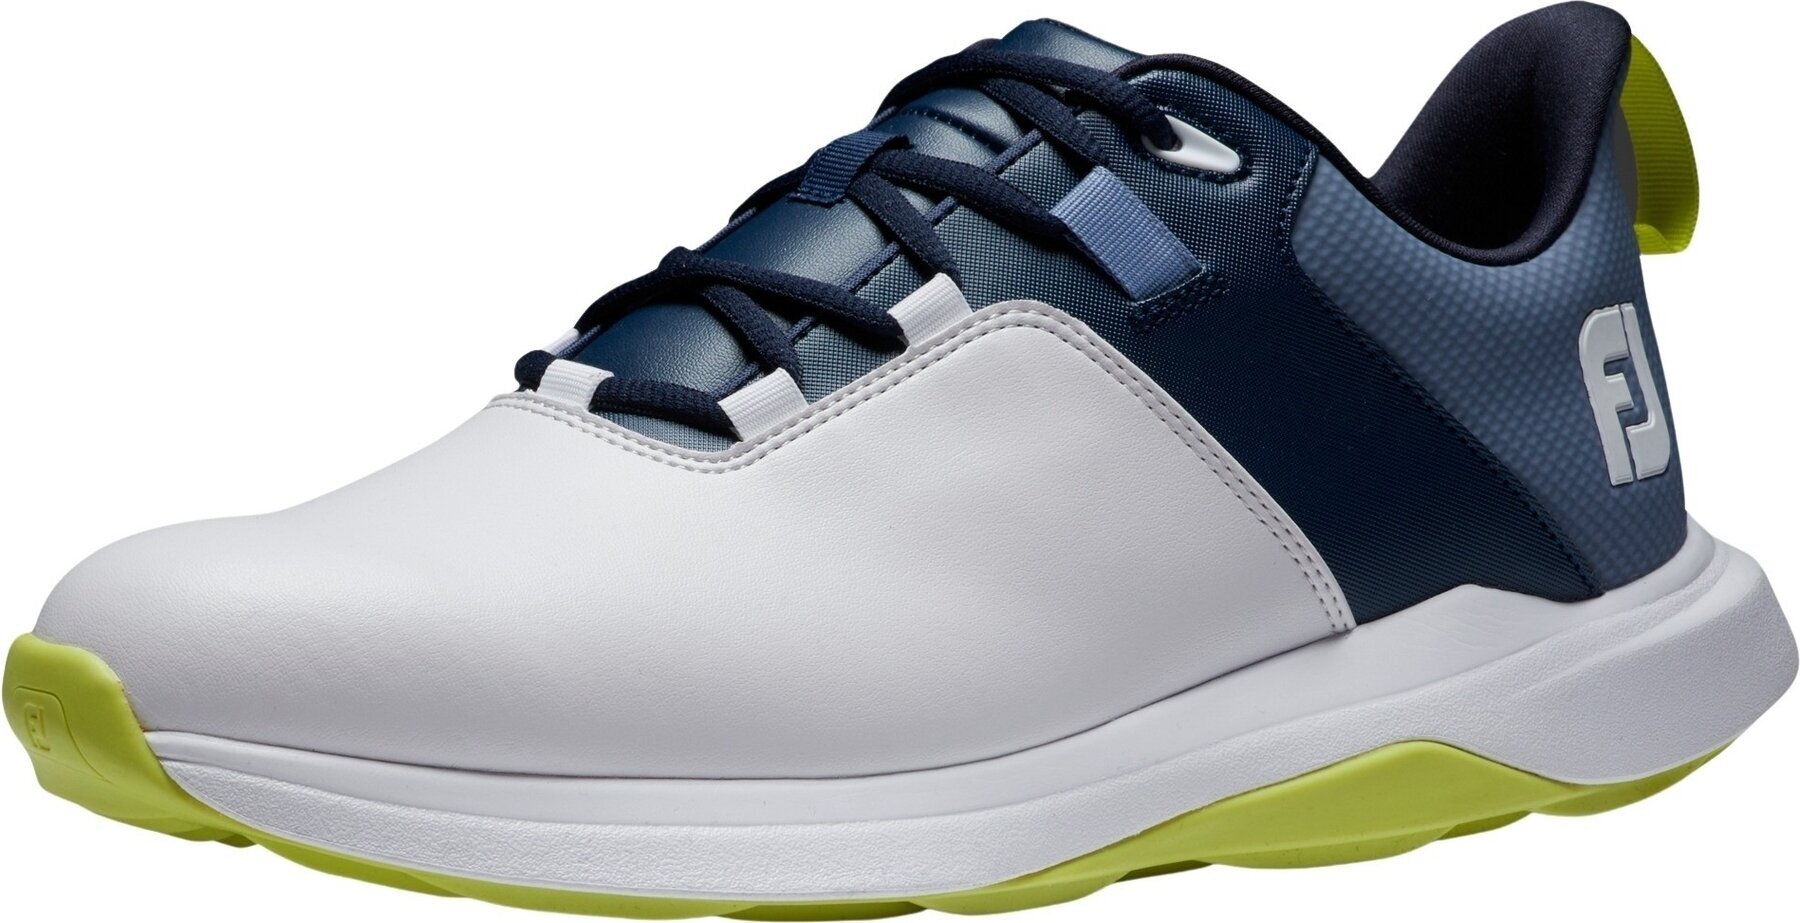 Calçado de golfe para homem Footjoy ProLite Mens Golf Shoes White/Navy/Lime 41